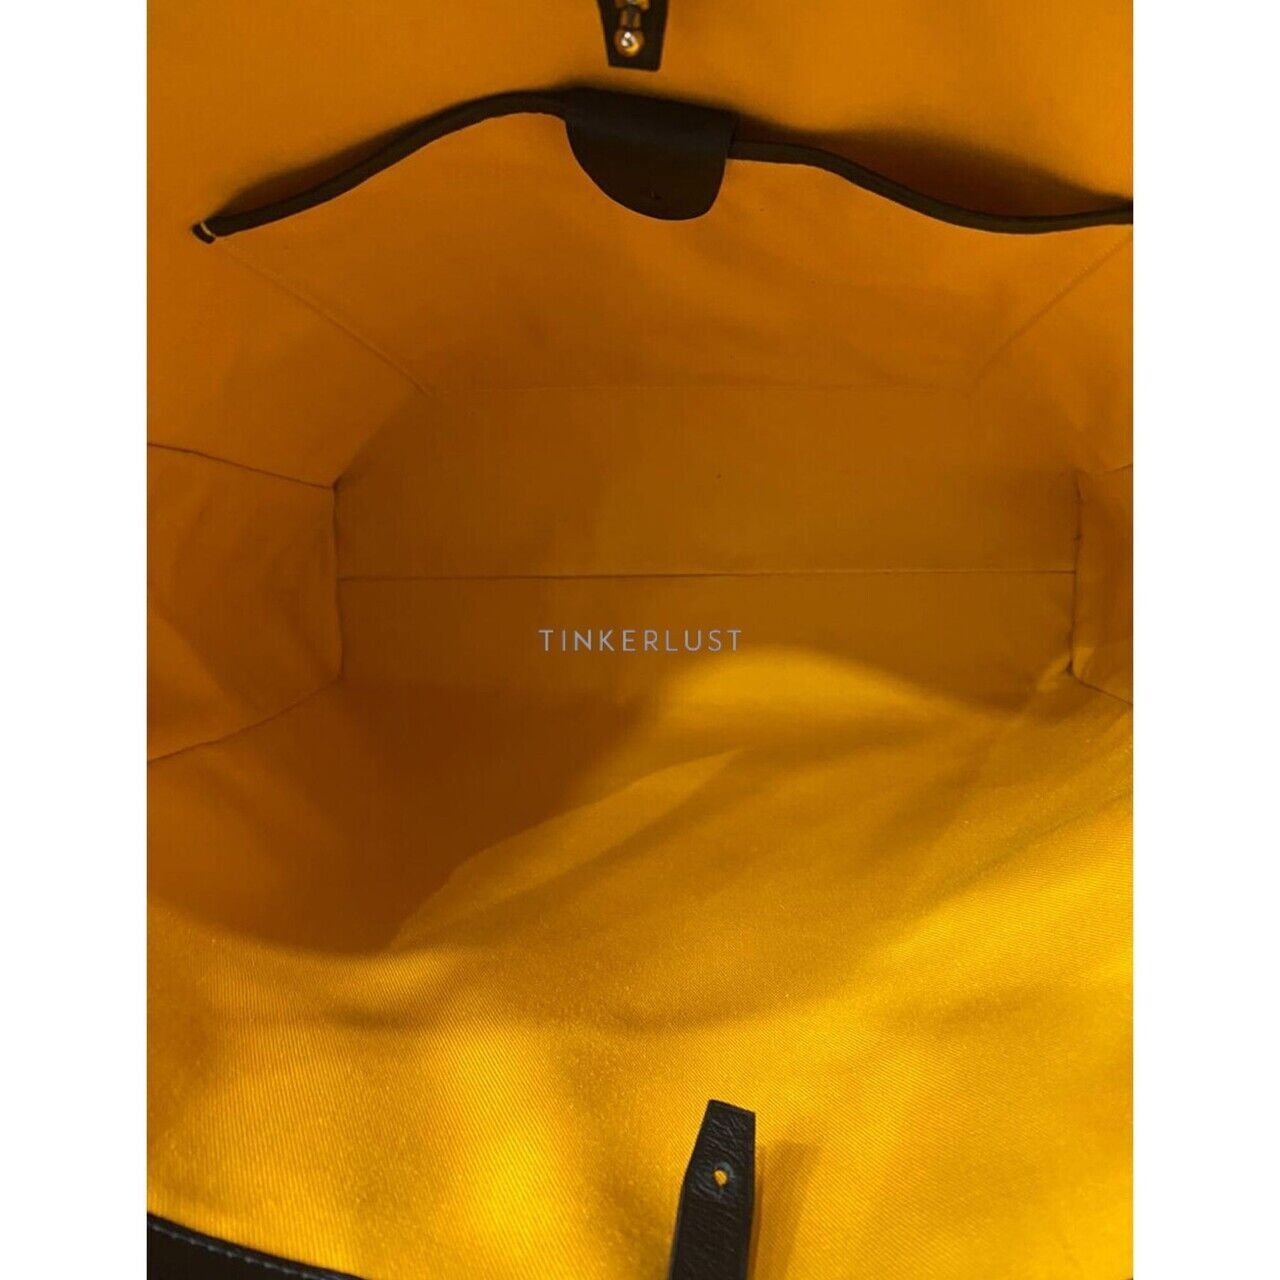 Goyard Voltaire Black 2019 SHW Handbag